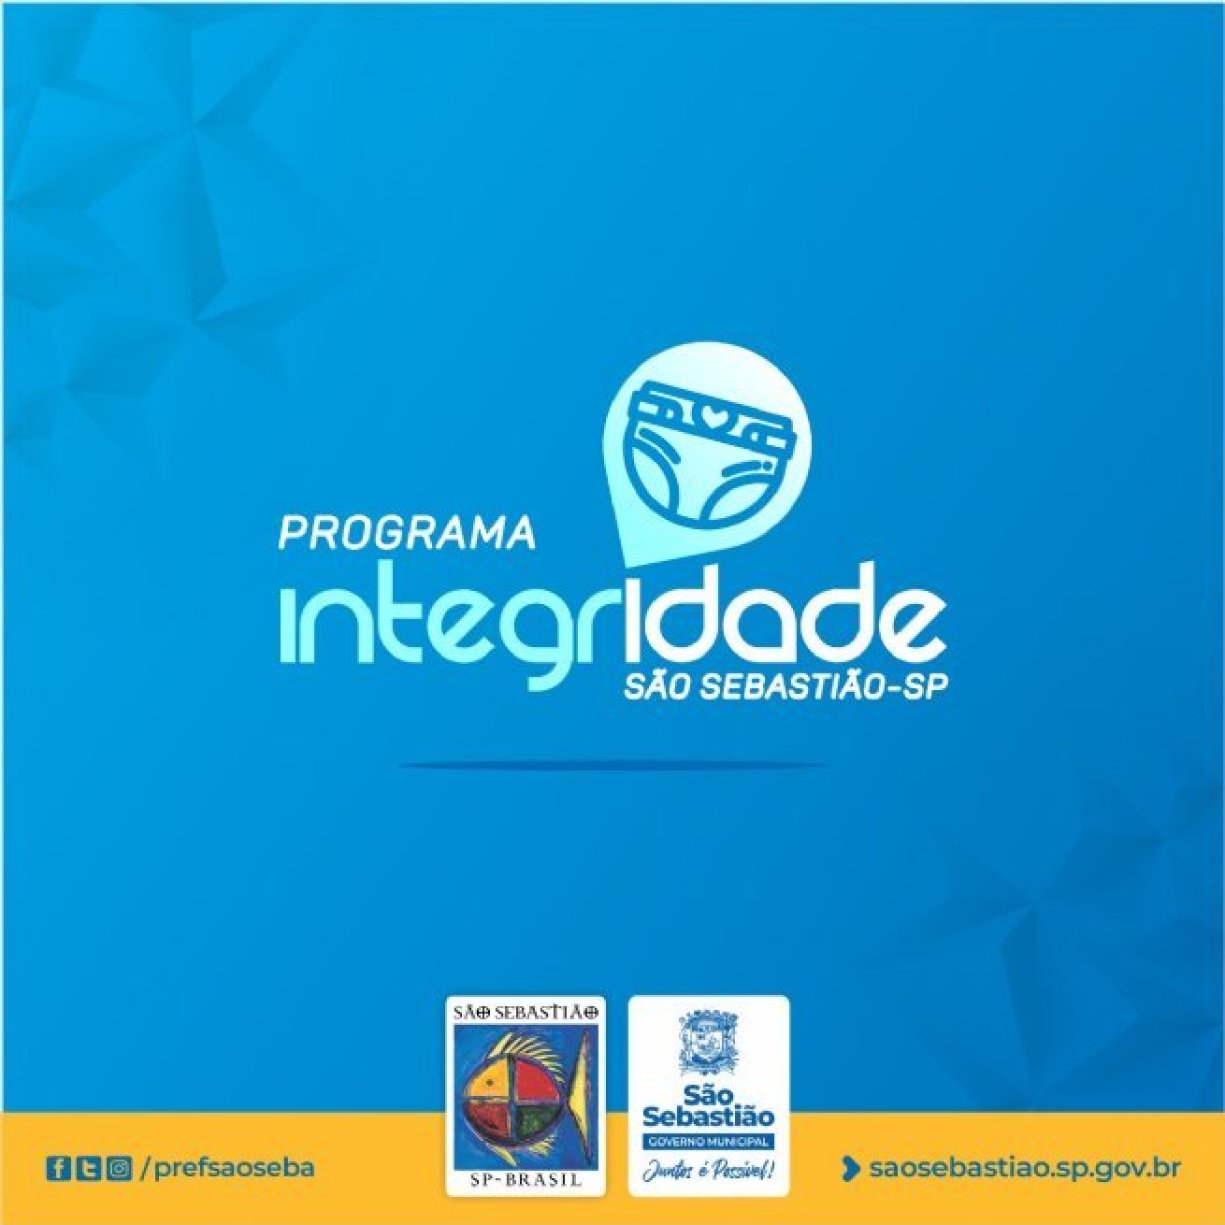 Programa Integridade da Prefeitura de São Sebastião distribui fraldas descartáveis